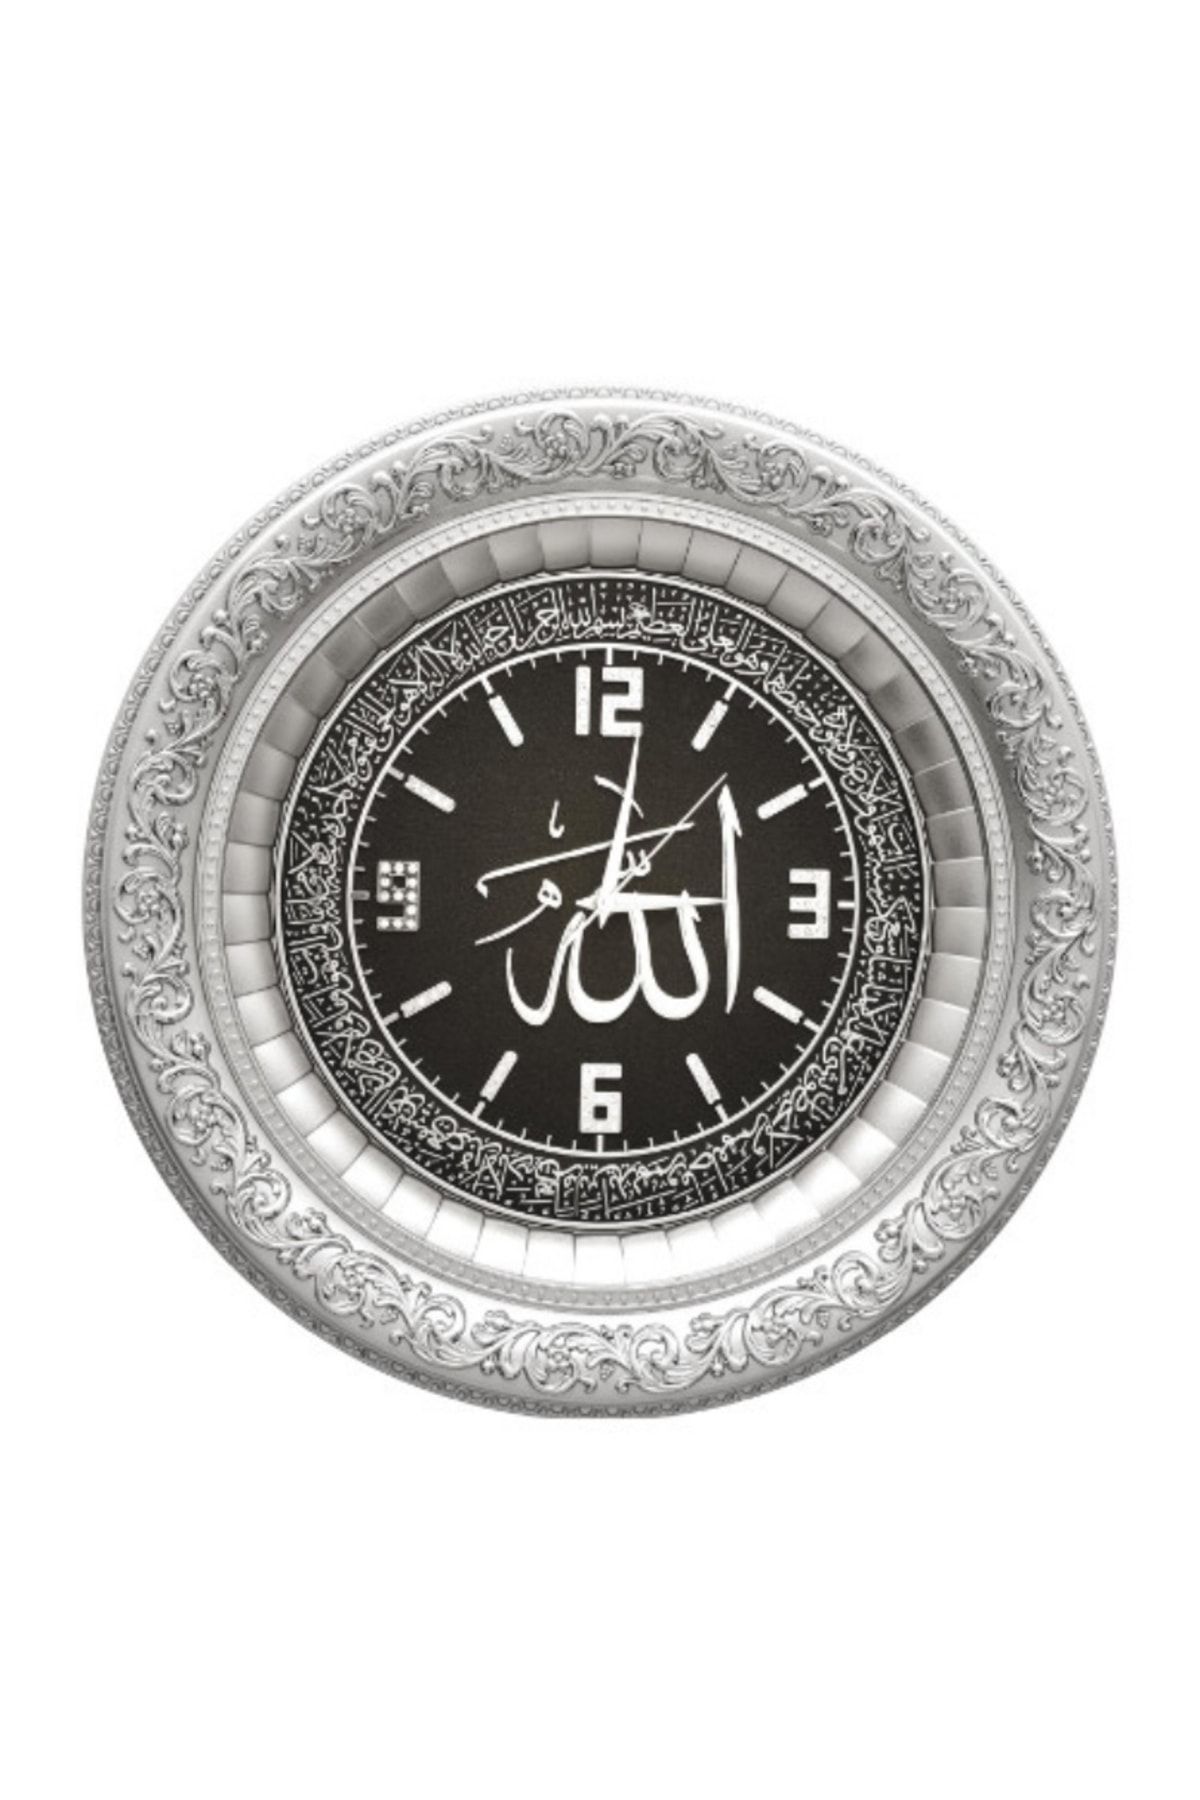 GÜNEŞ HEDİYELİK 44x44 Cm - Saat - Ismi Celil Ayet-el Kürsi - Gümüş